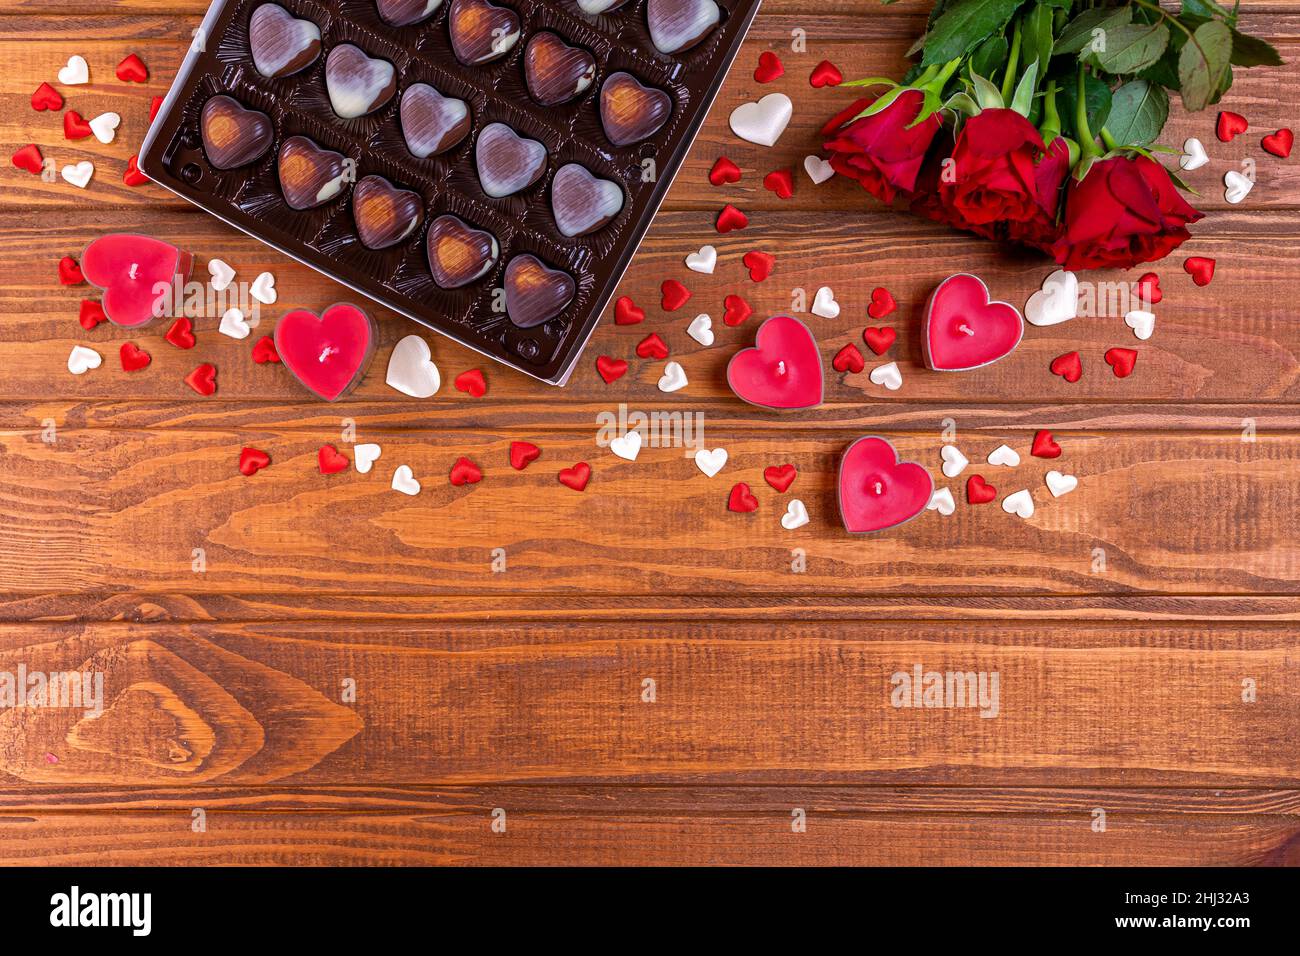 Valentinstag Konzept Schokolade Bonbons herzförmig und rote Rosen mit Kerzen auf Holz. Liebe und Romantik Konzept. Stockfoto